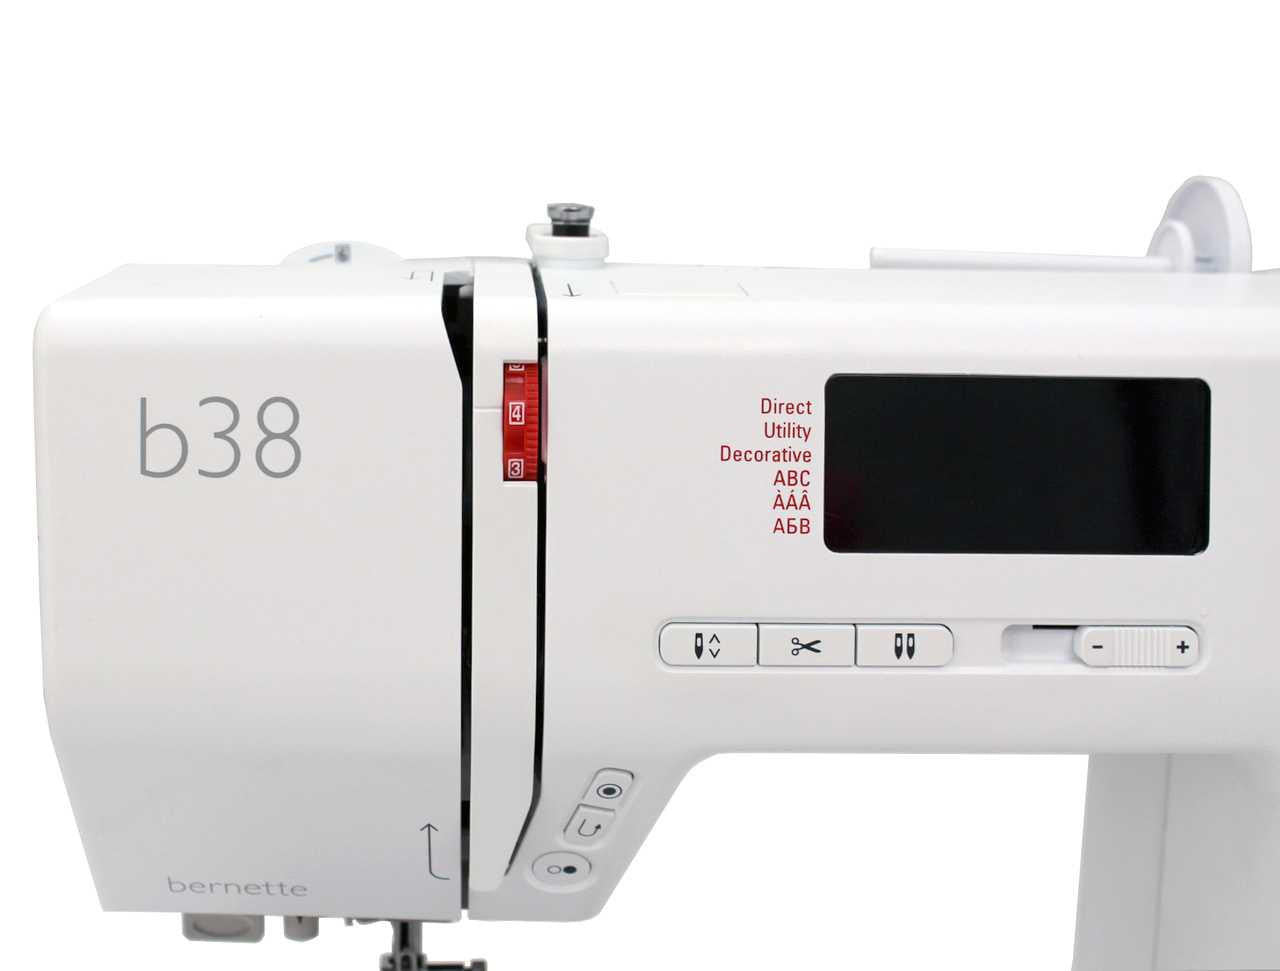 bernette 38 Sewing Machine